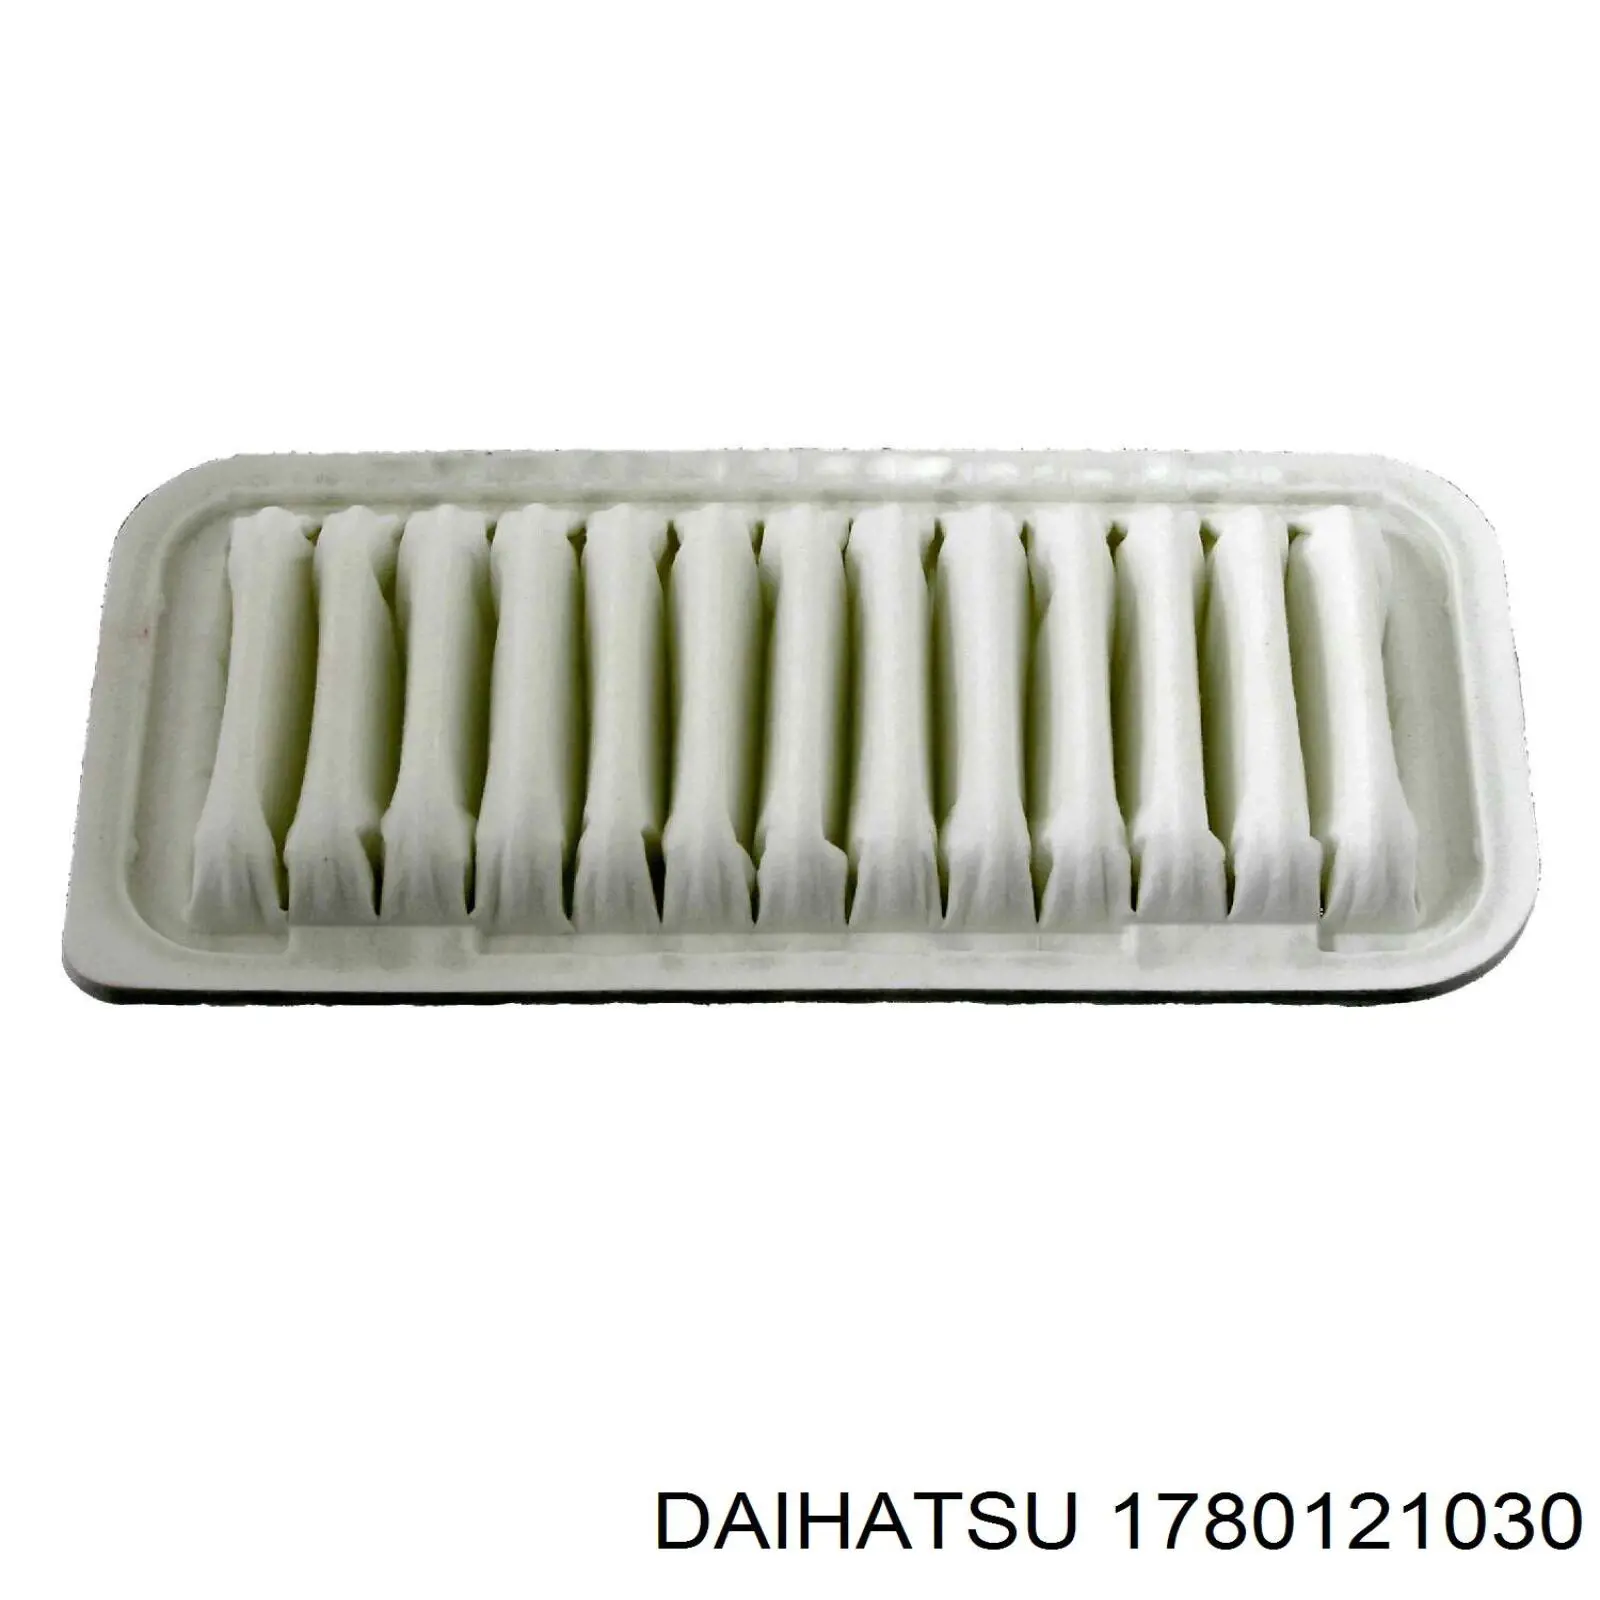 1780121030 Daihatsu filtro de aire